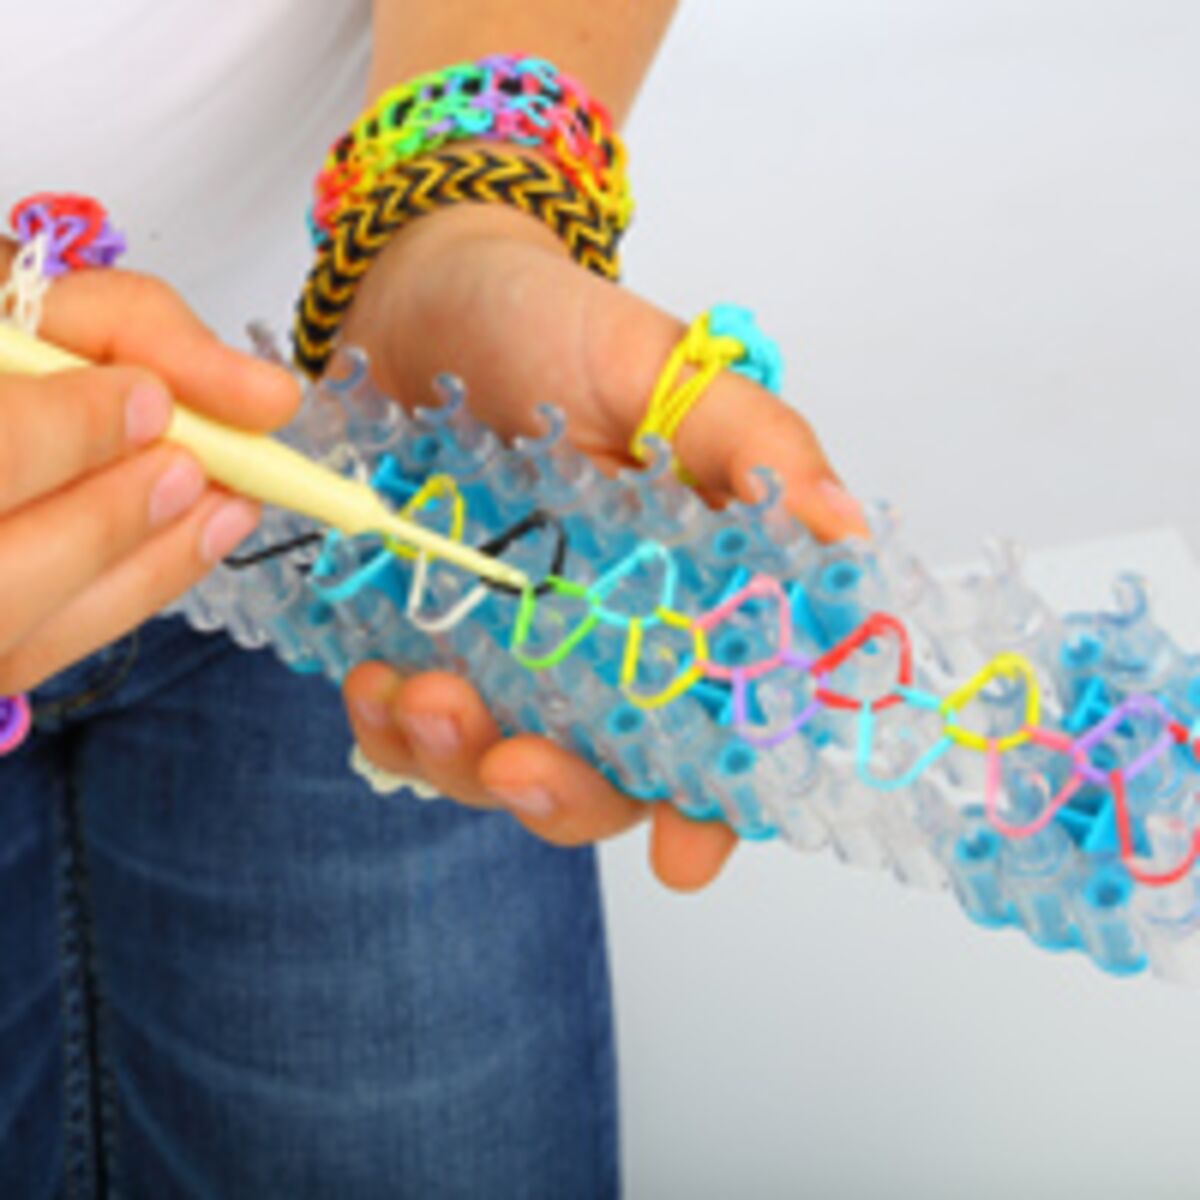 Tous nos modèles de bracelets élastiques Rainbow Loom : Femme Actuelle Le  MAG